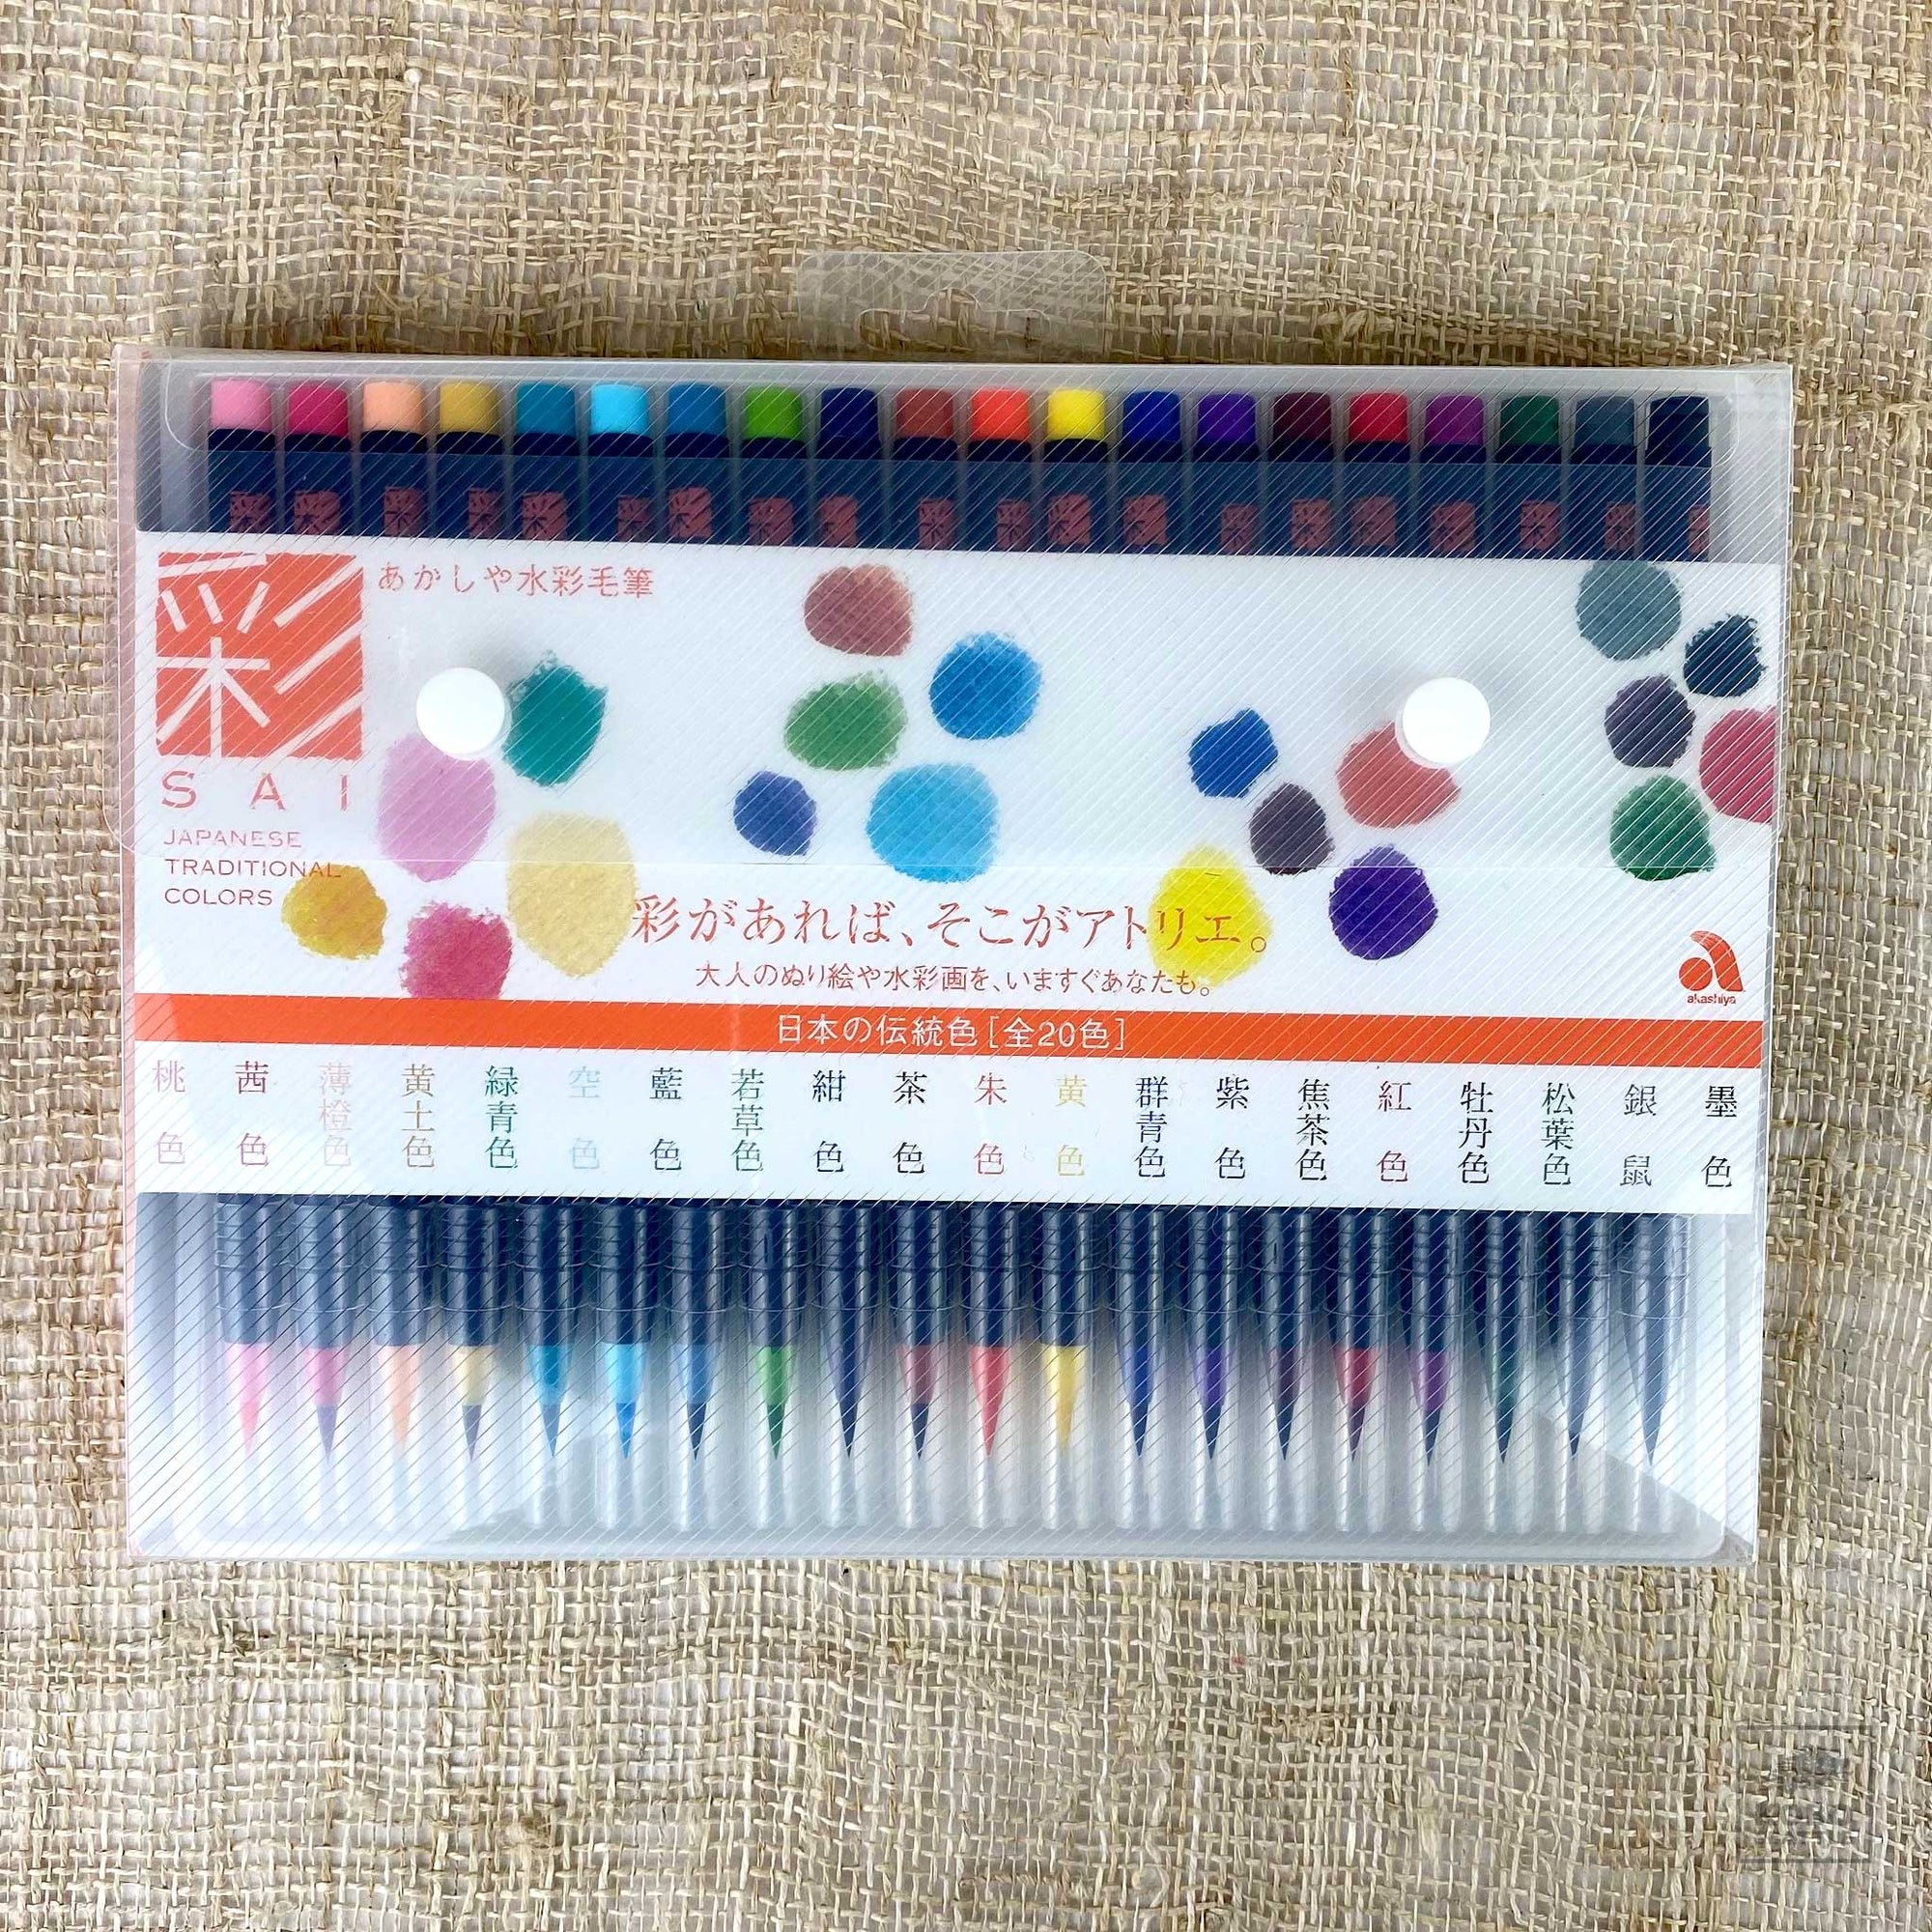 SAI Watercolor Brush Pens - 20 Color Set